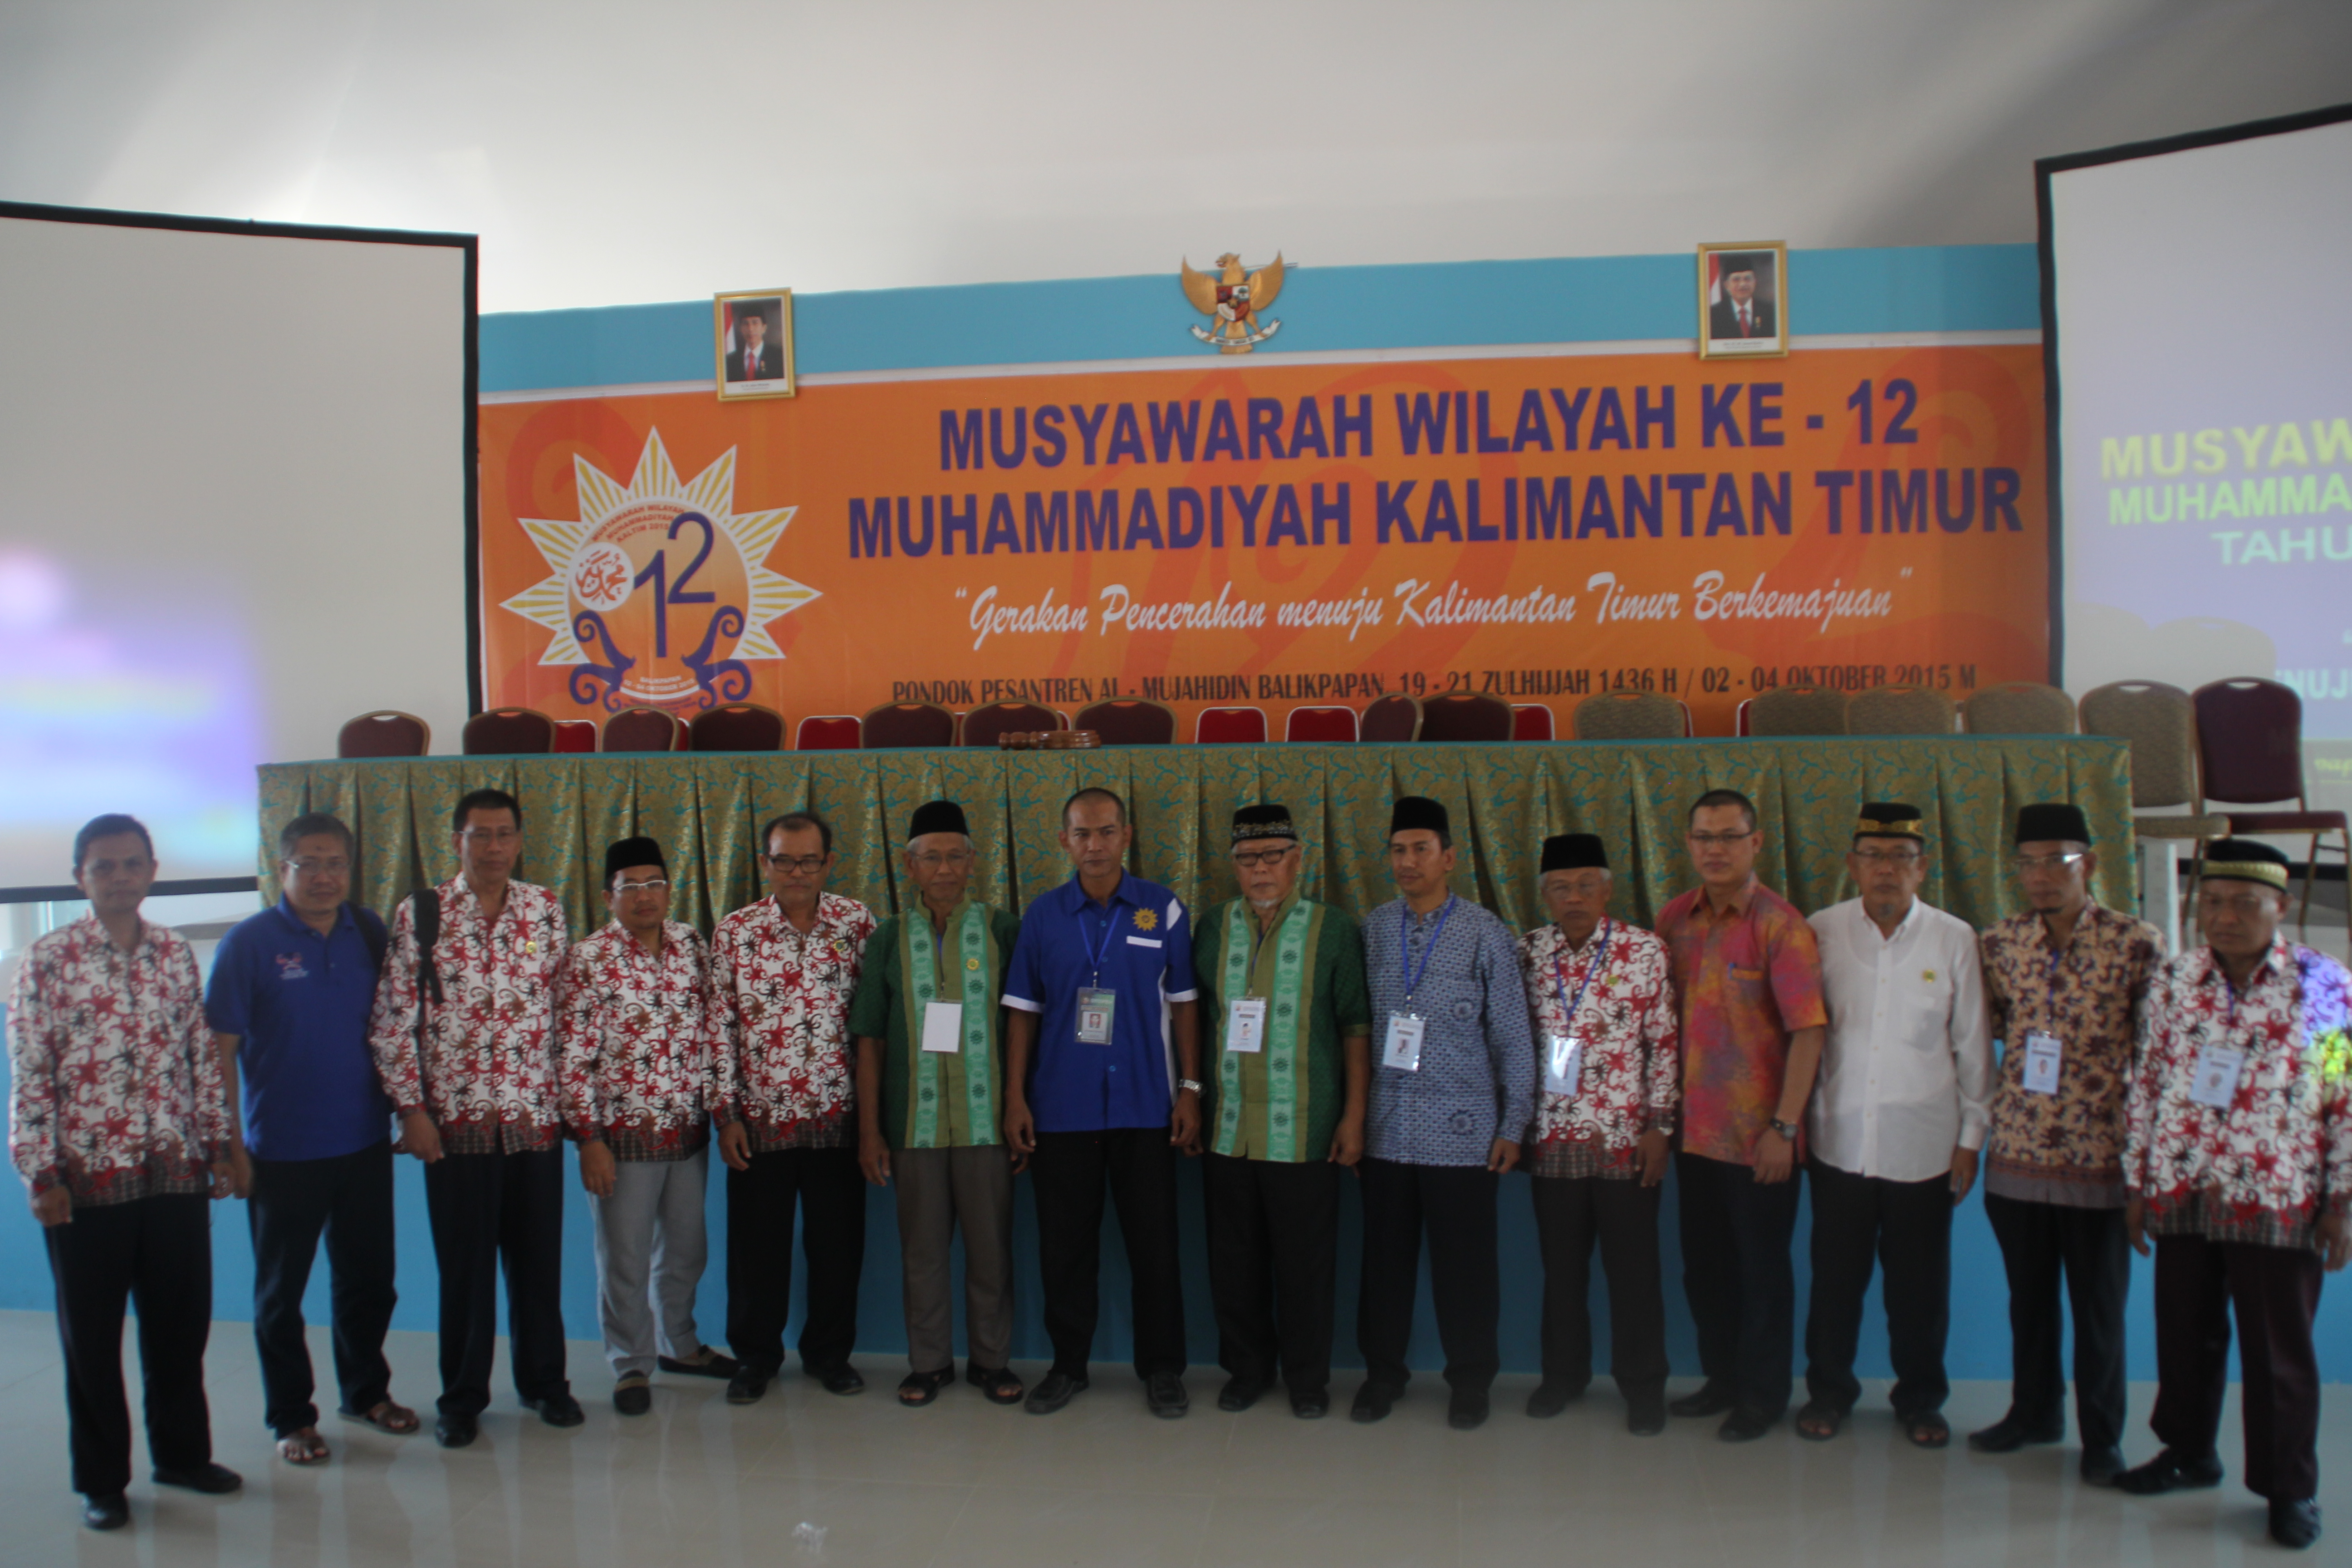 Majelis Tabligh PW Muhammadiyah Kalimantan Timur